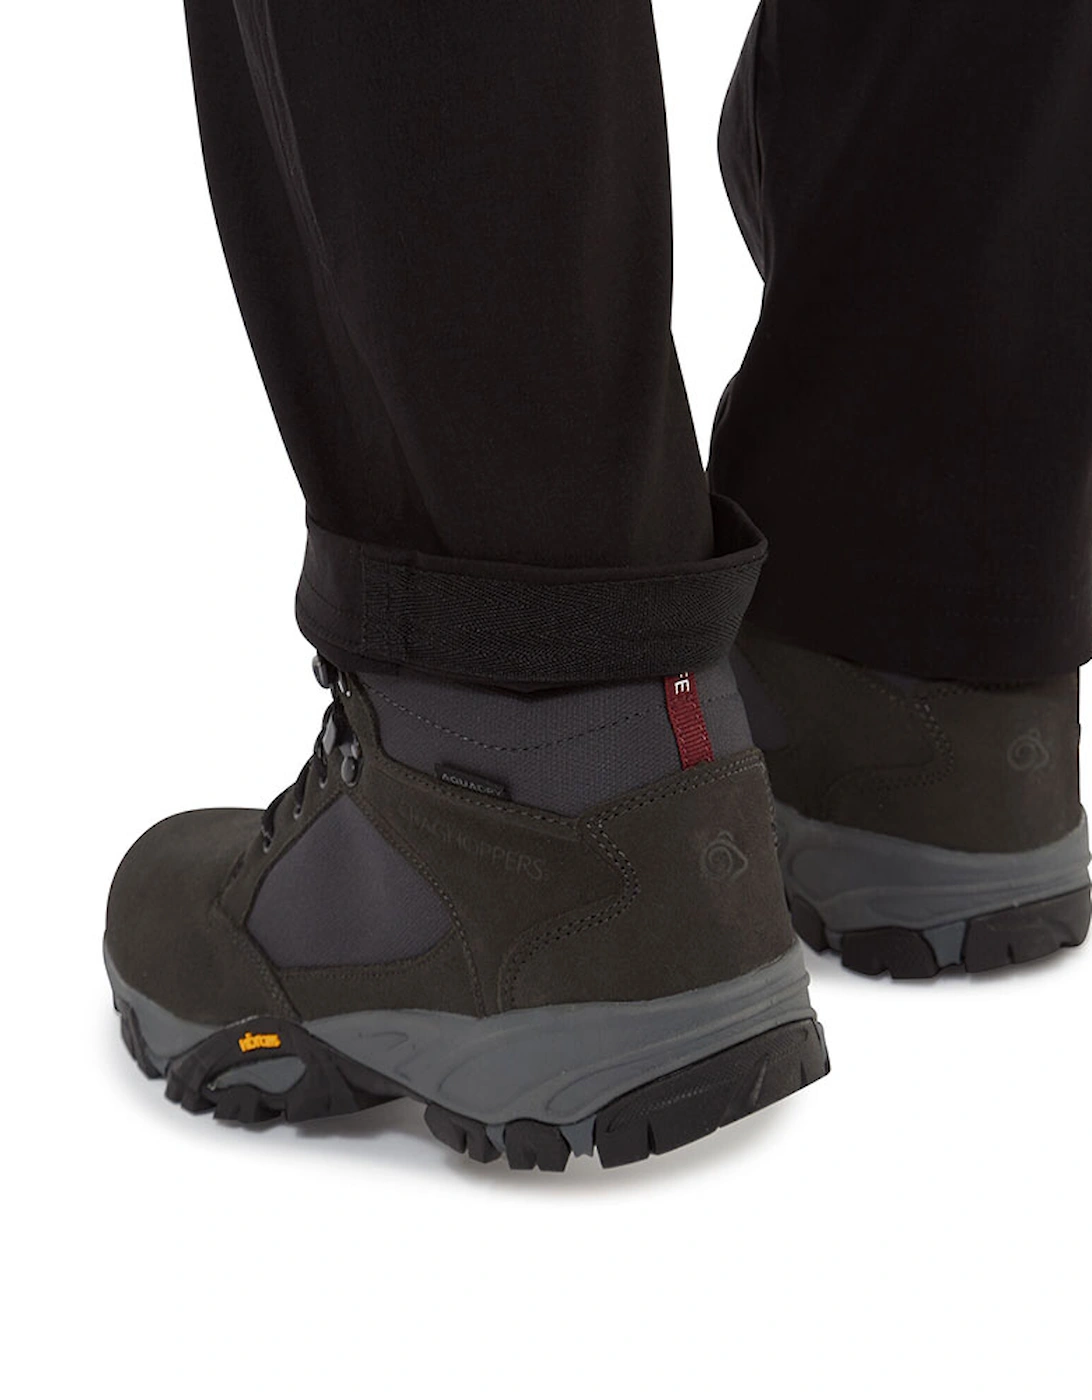 Womens Kiwi II Pro Smart Dry Walking Trousers